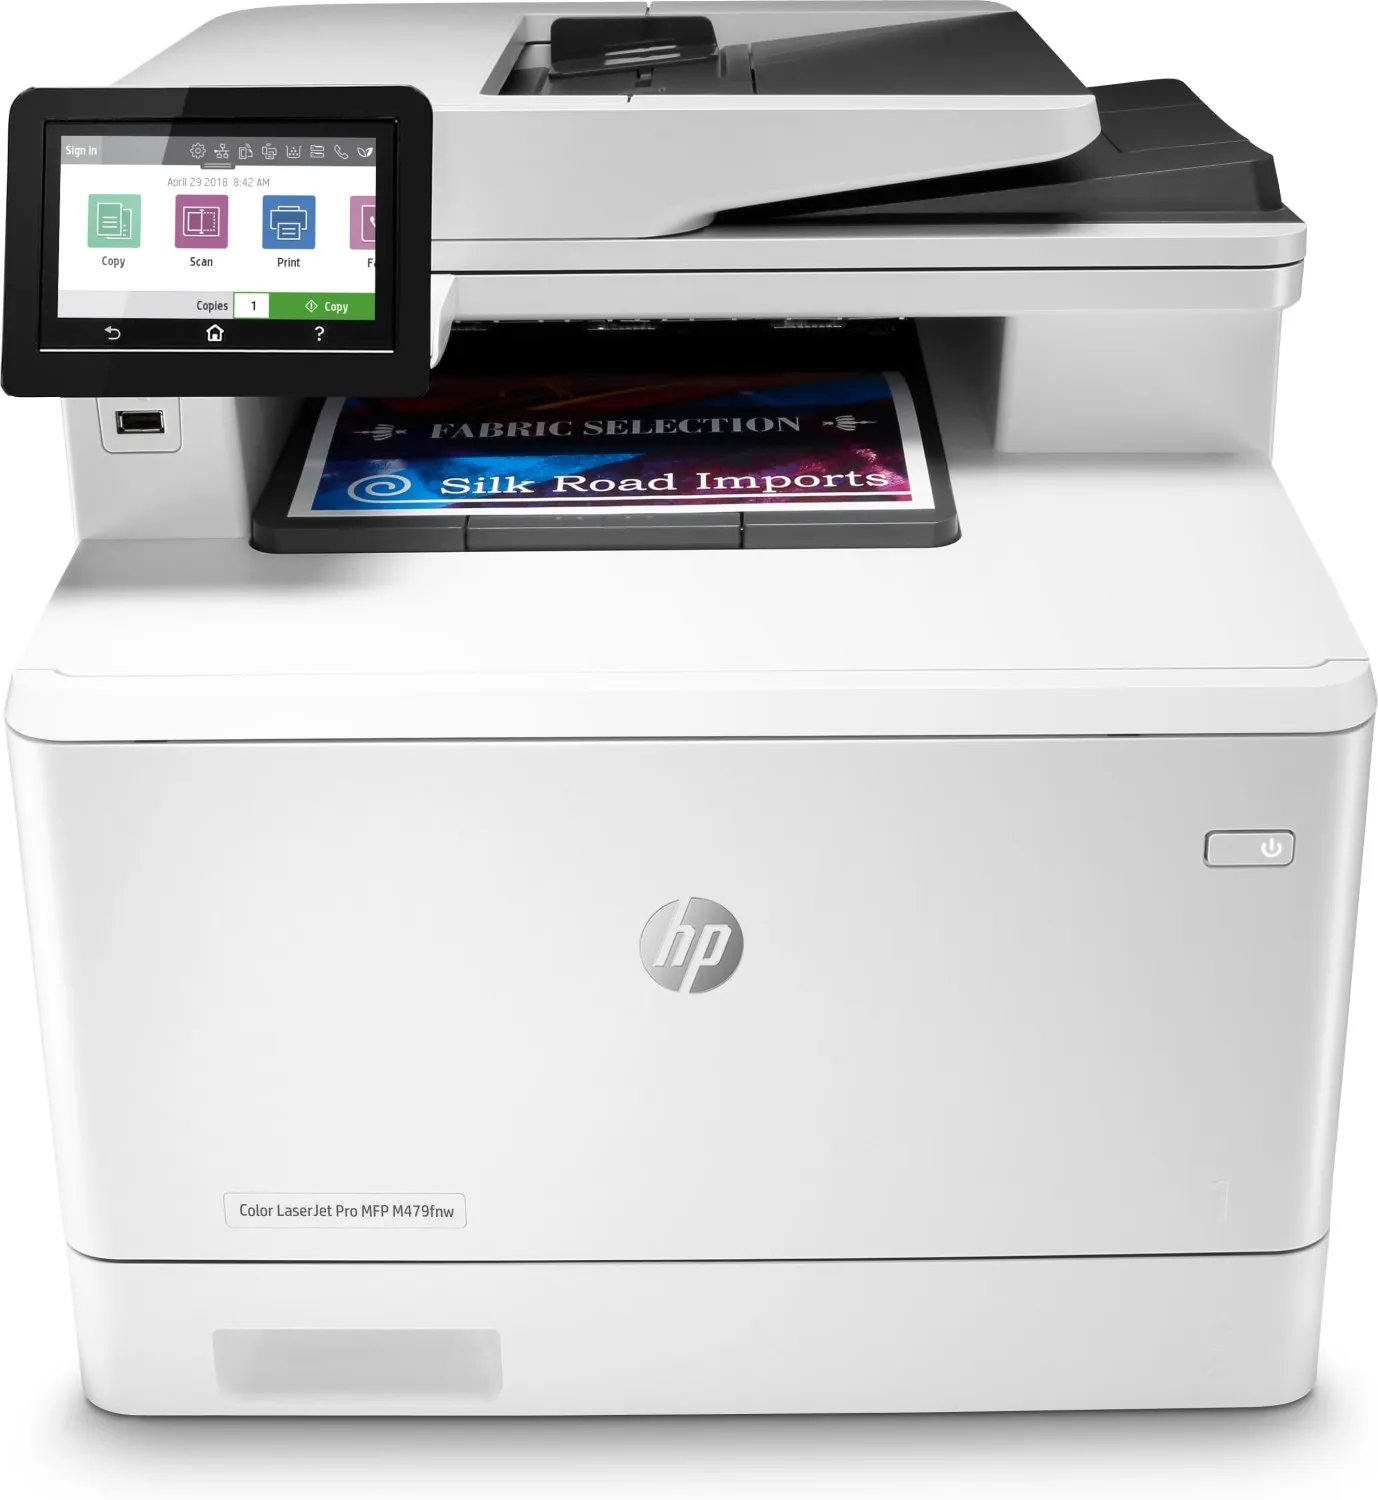  Color LaserJet Pro Stampante multifunzione M479fnw, Stampa, copia, scansione, fax, e-mail, Scansione verso e-mail/PDF; ADF da 50 fogli piani